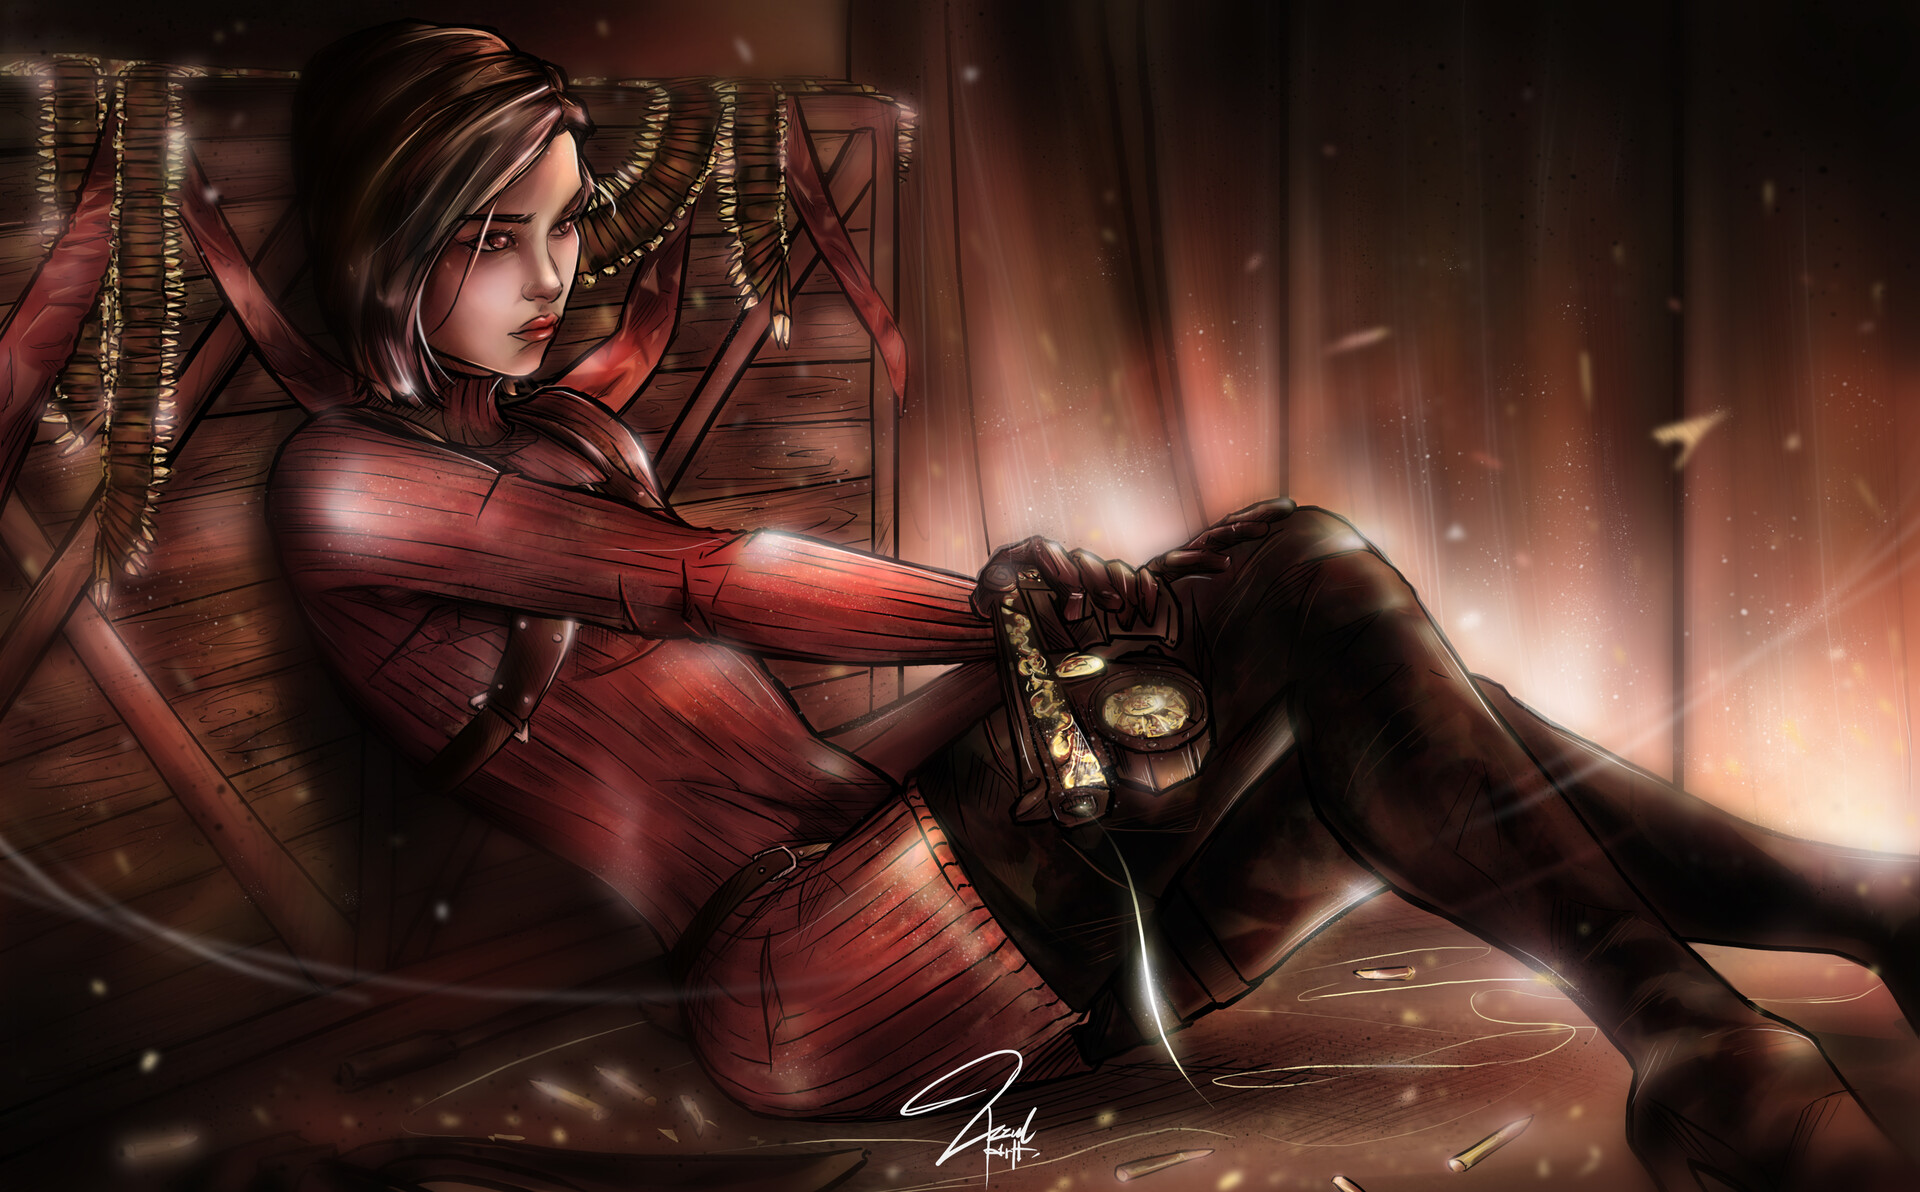 ArtStation - Resident Evil 4: Ashley Graham